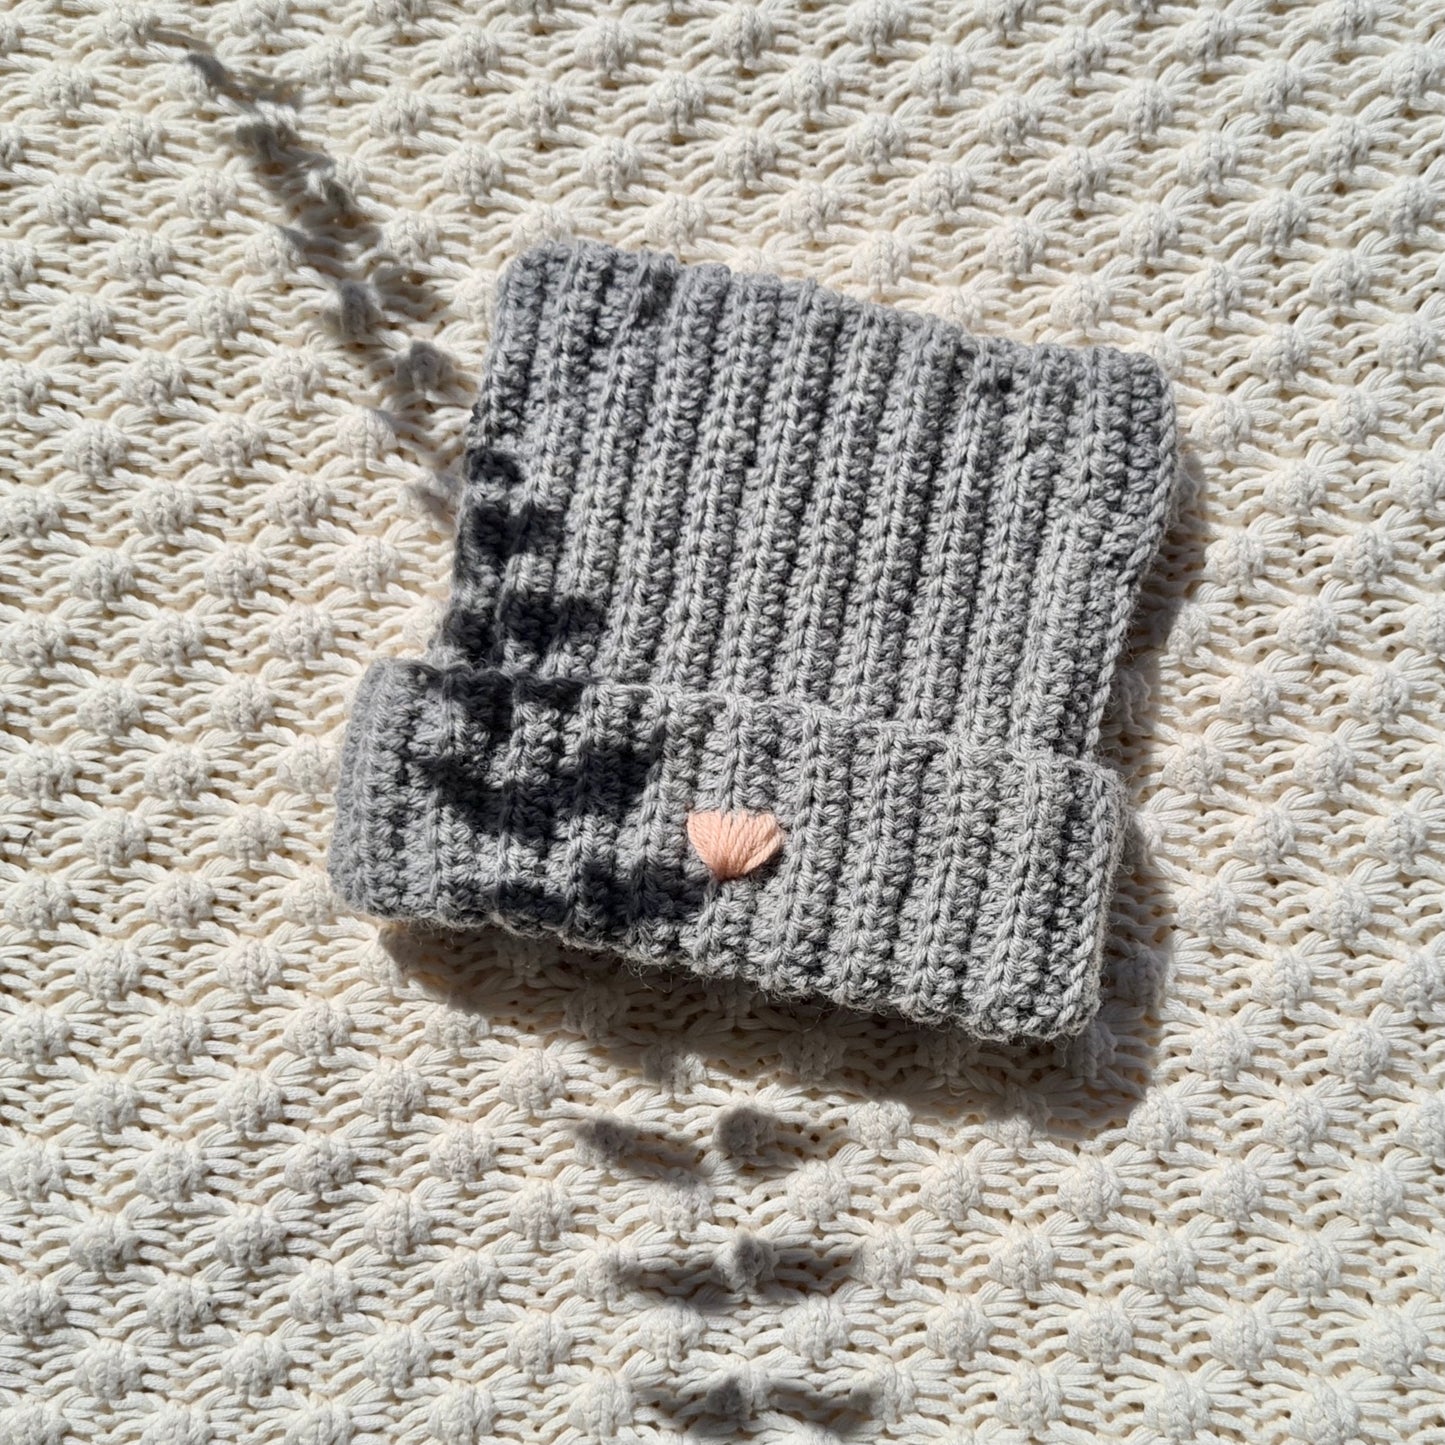 Crochet Cat Beanie